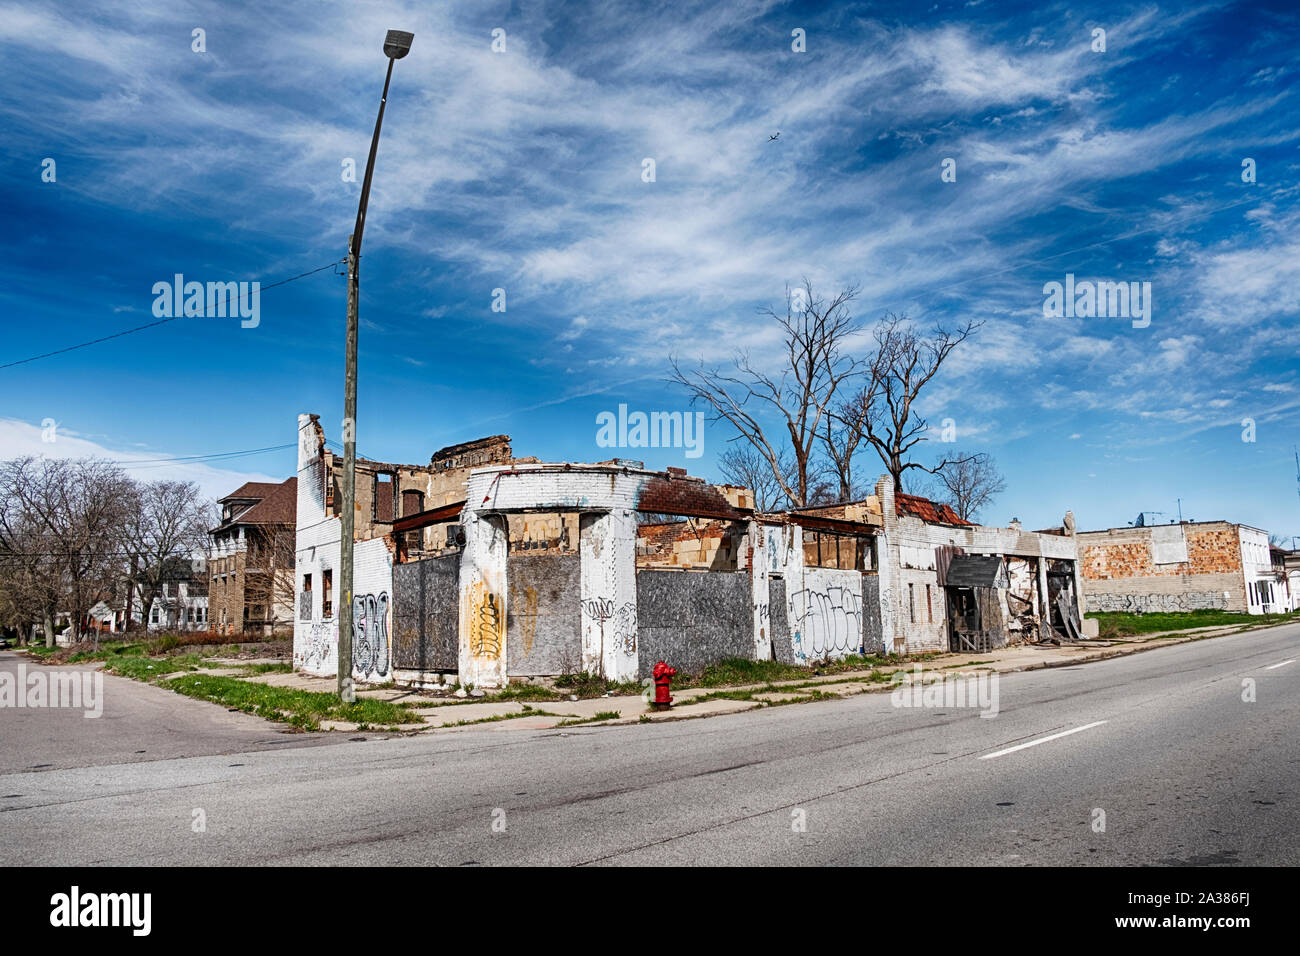 DETROIT, MICHIGAN - 27 avril 2019 : un dépanneur sur Hamilton Avenue à Detroit est symbolique de la dégradation du milieu urbain. Banque D'Images